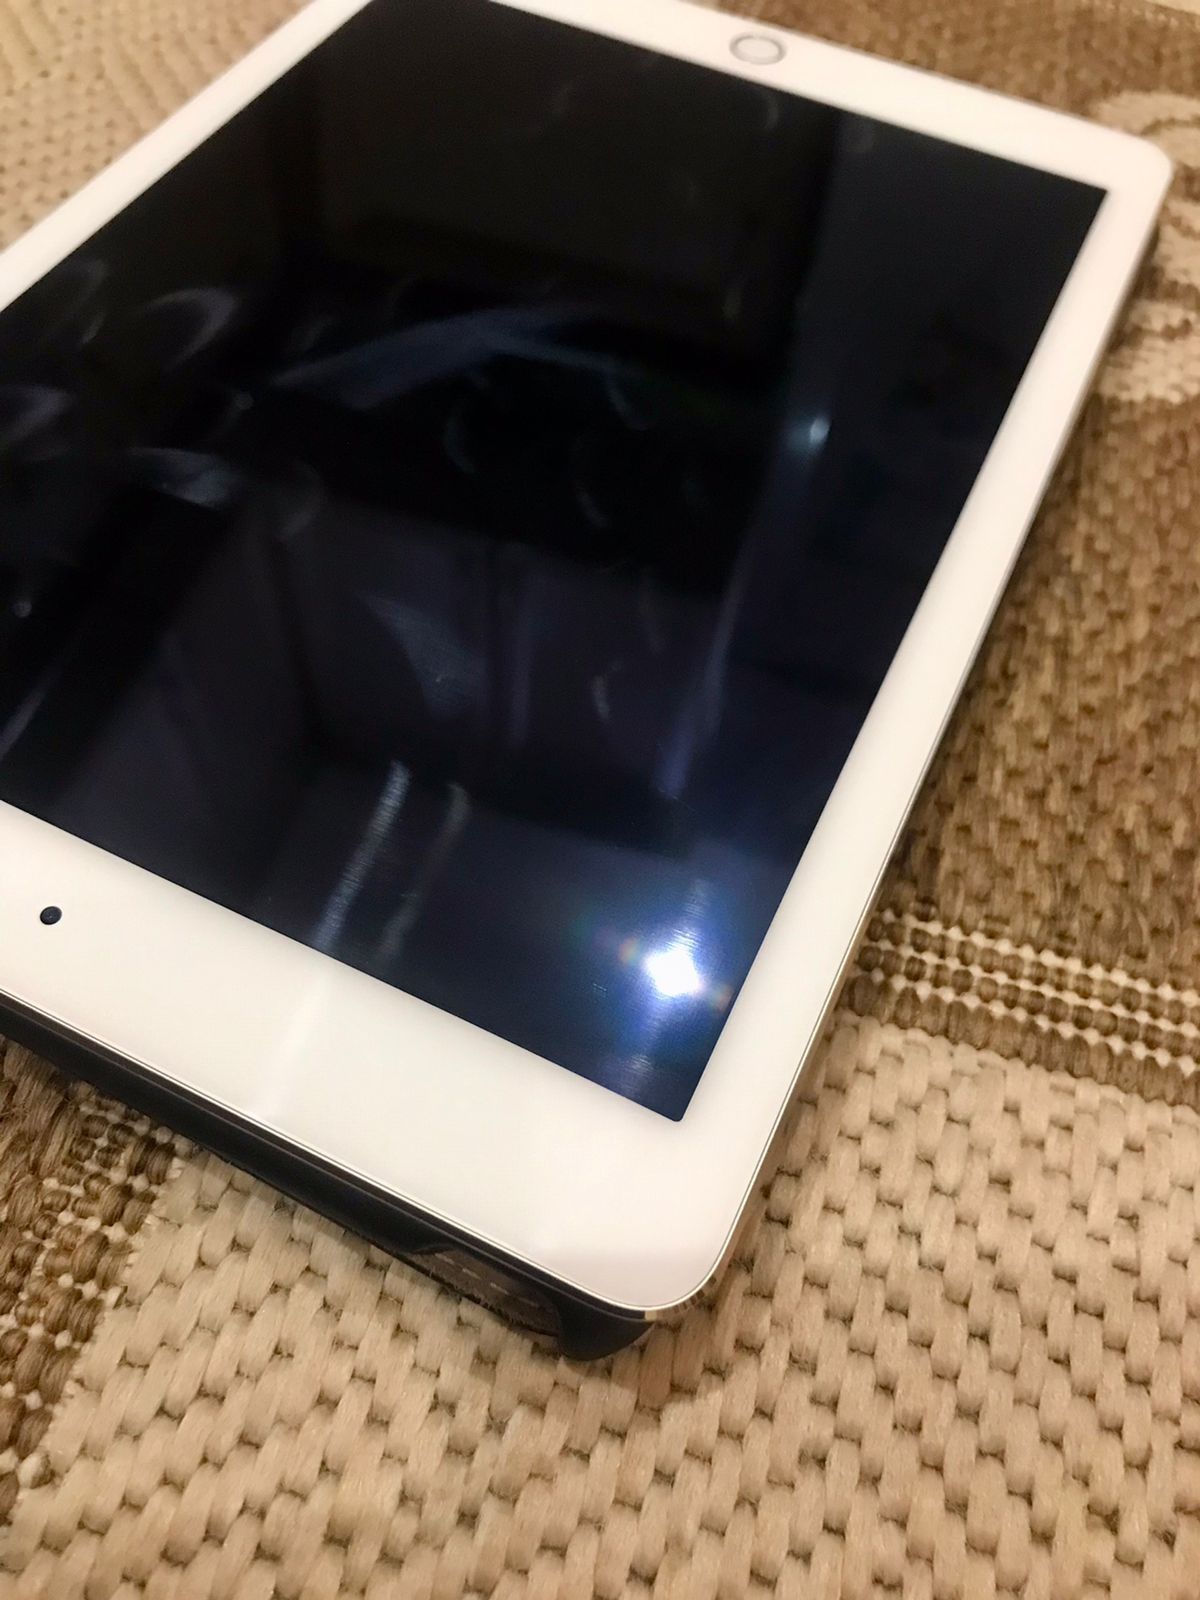 iPad Air 2 Gold wi-fi 16gb ідеальний стан